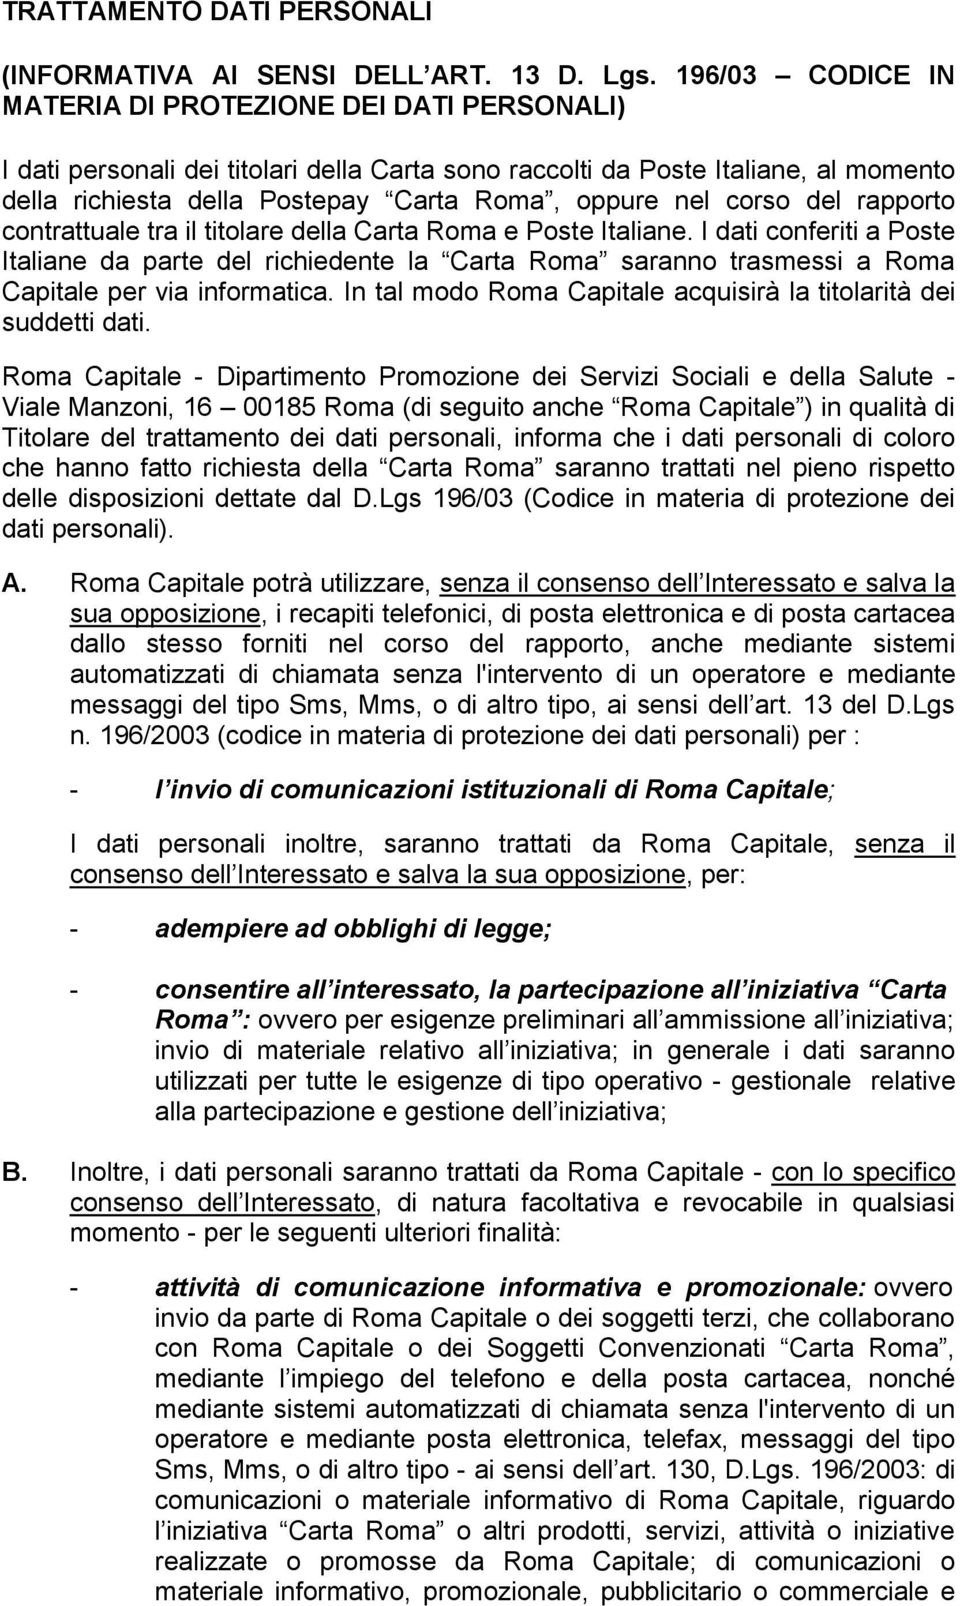 corso del rapporto contrattuale tra il titolare della Carta Roma e Poste Italiane.